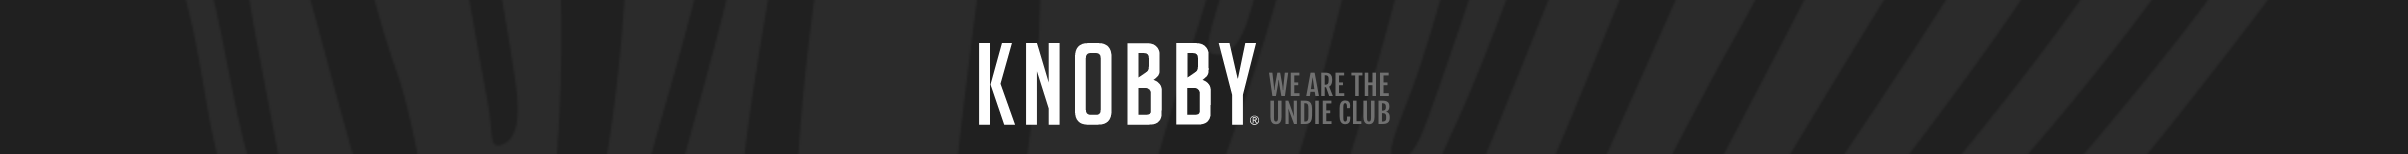 Knobby Underwear - Aussie Destinations Unknown